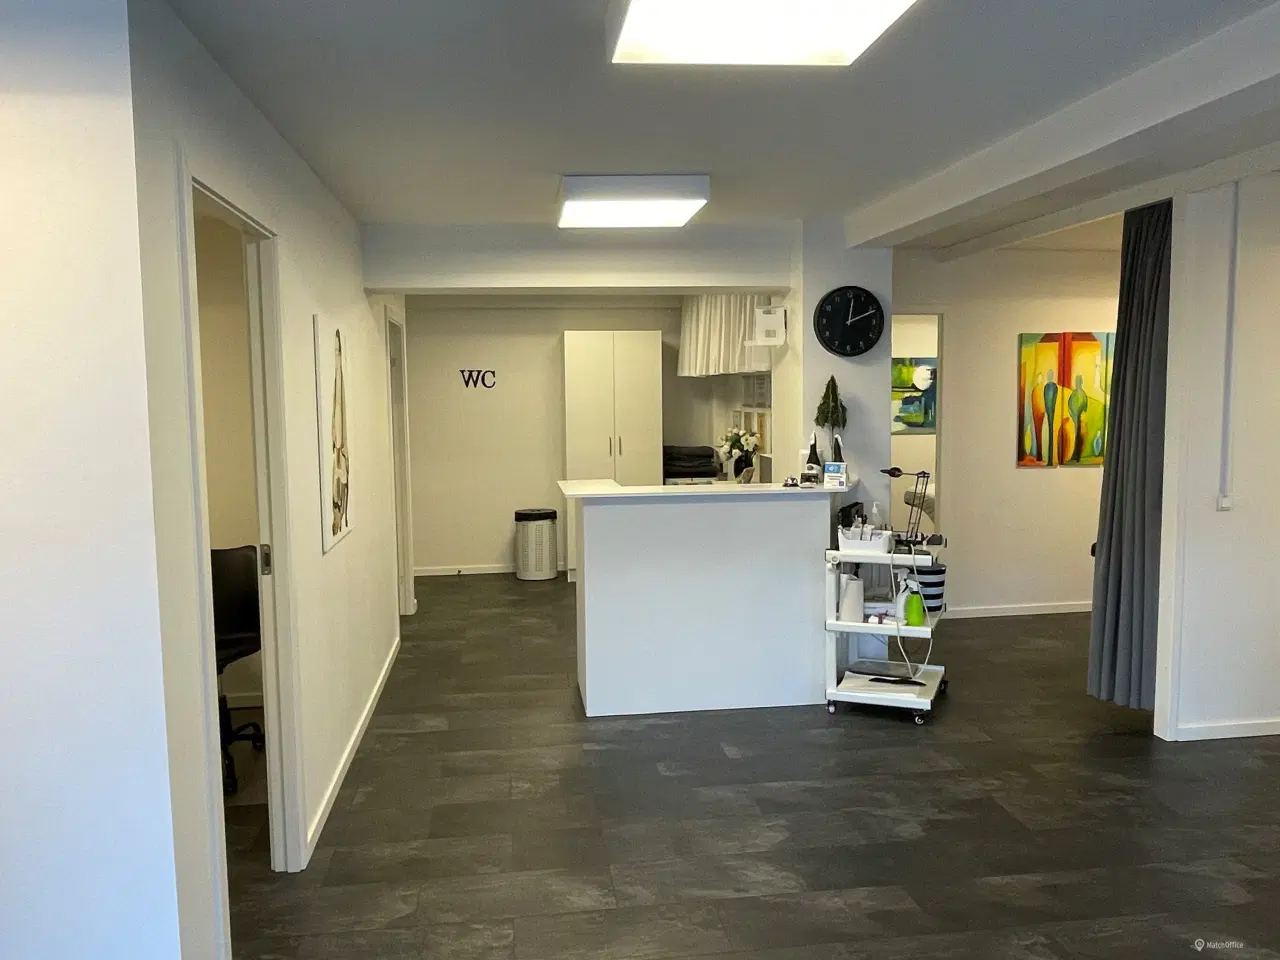 Billede 6 - 110 m2 kontor, klinik, butik centralt i Ikast by.